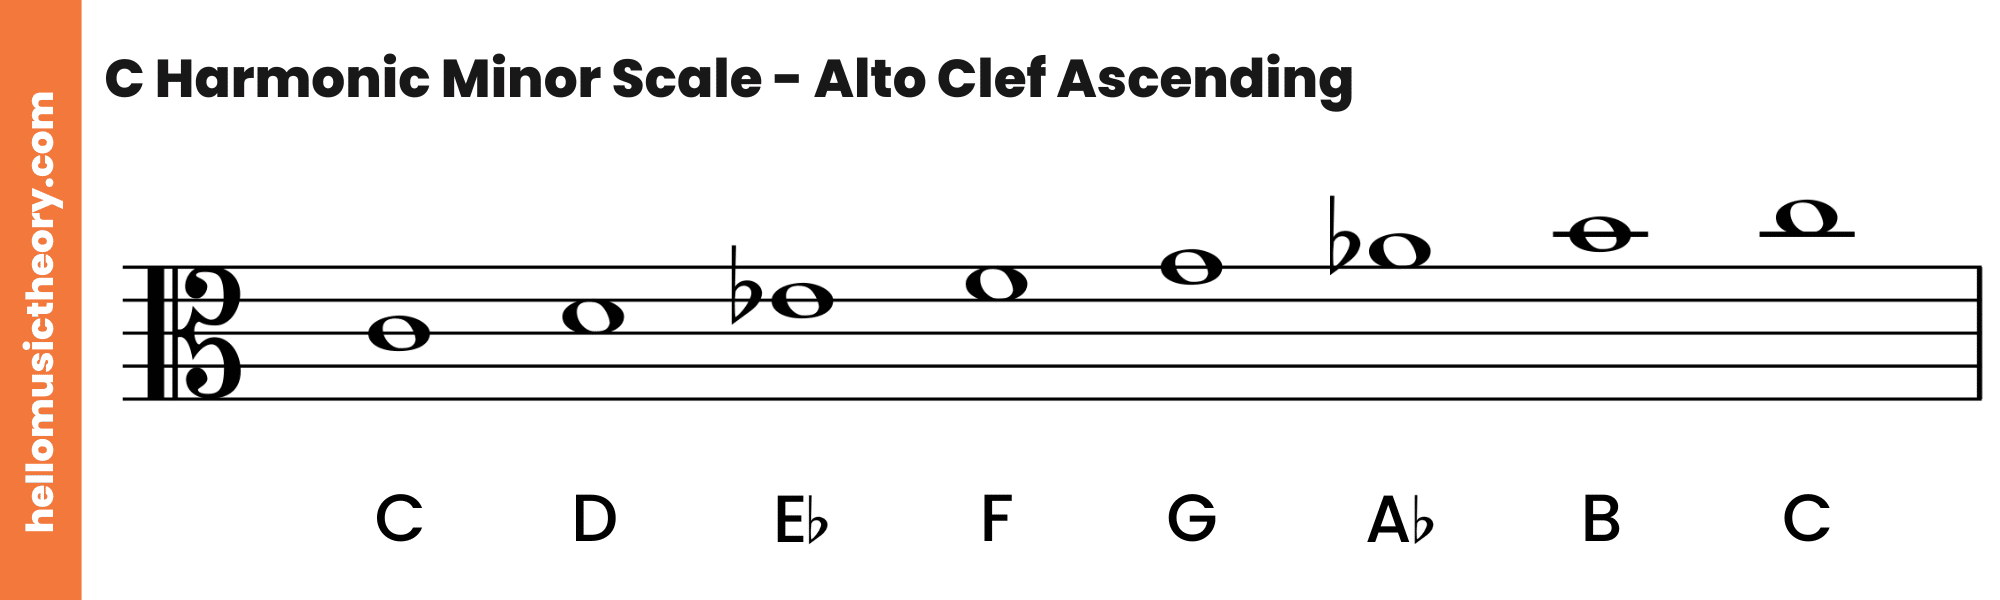 C Harmonic Minor Scale Alto Clef Ascending